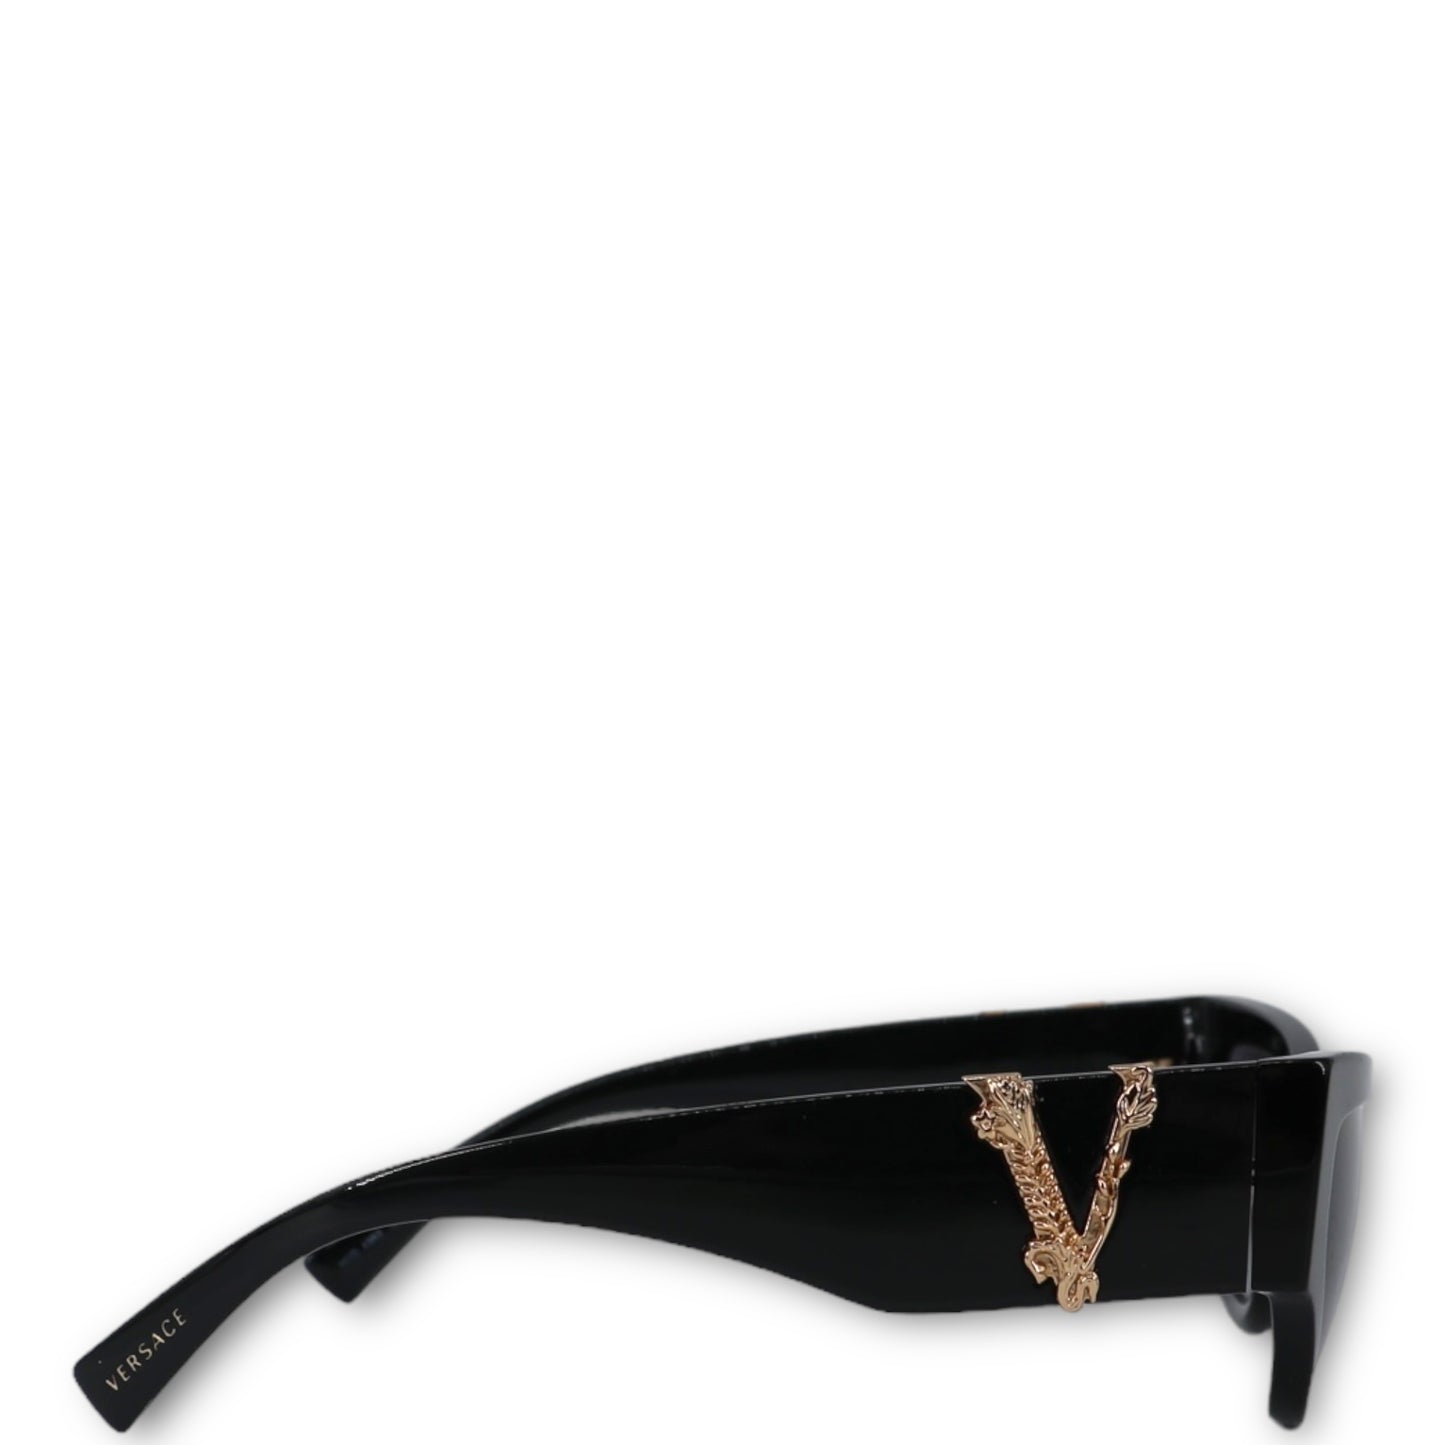 Versace Sonnenbrille schwarz